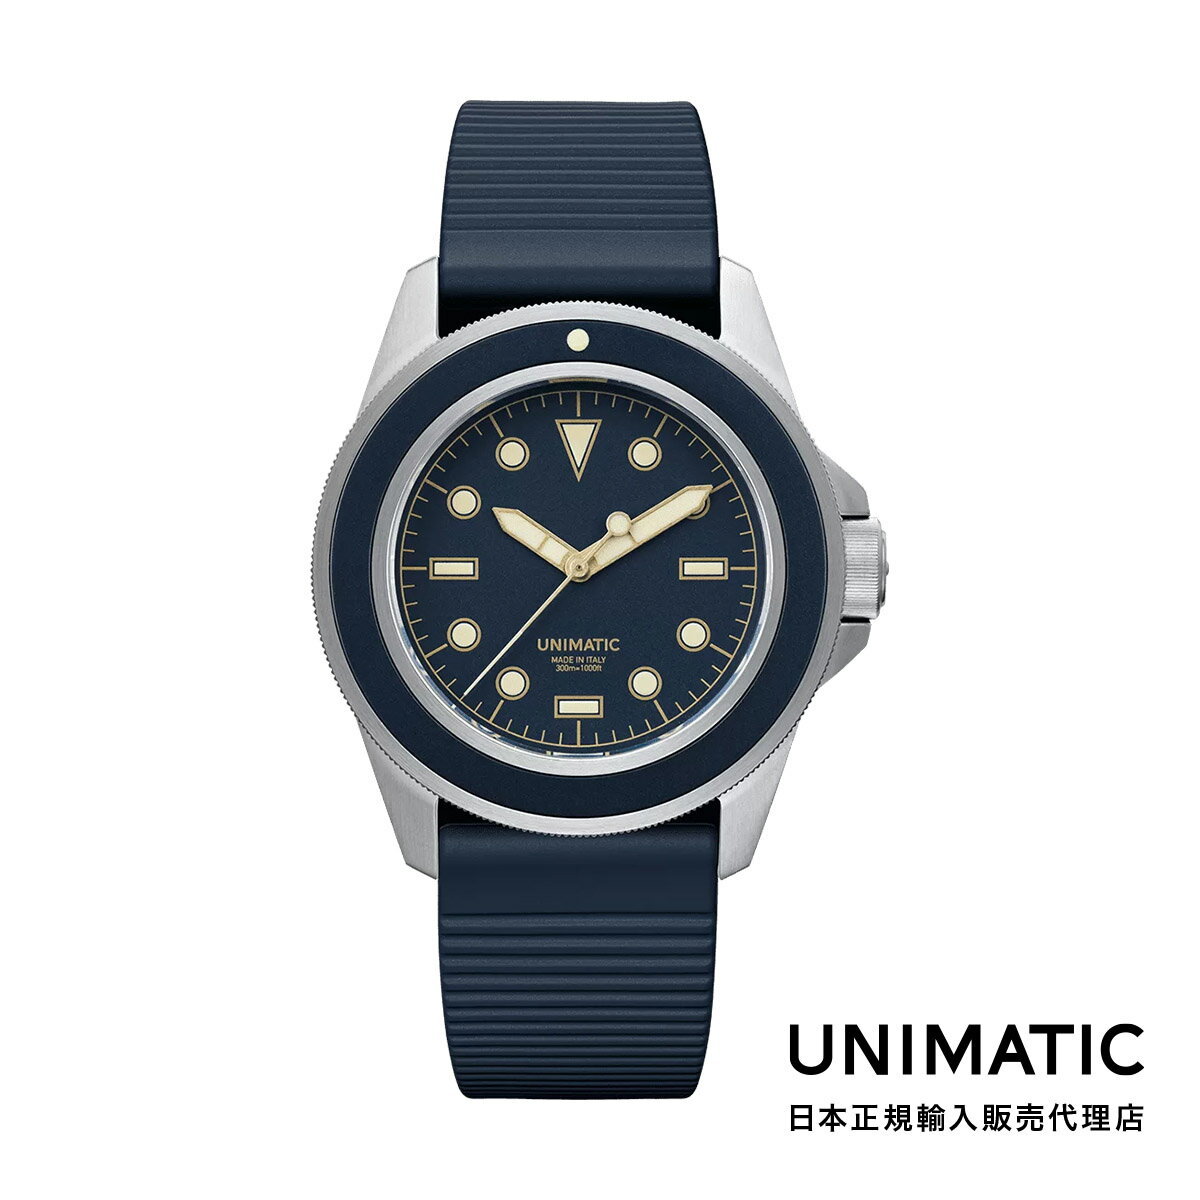 UNIMATIC ウニマティック MODELLO UNO 8N メンズ 腕時計